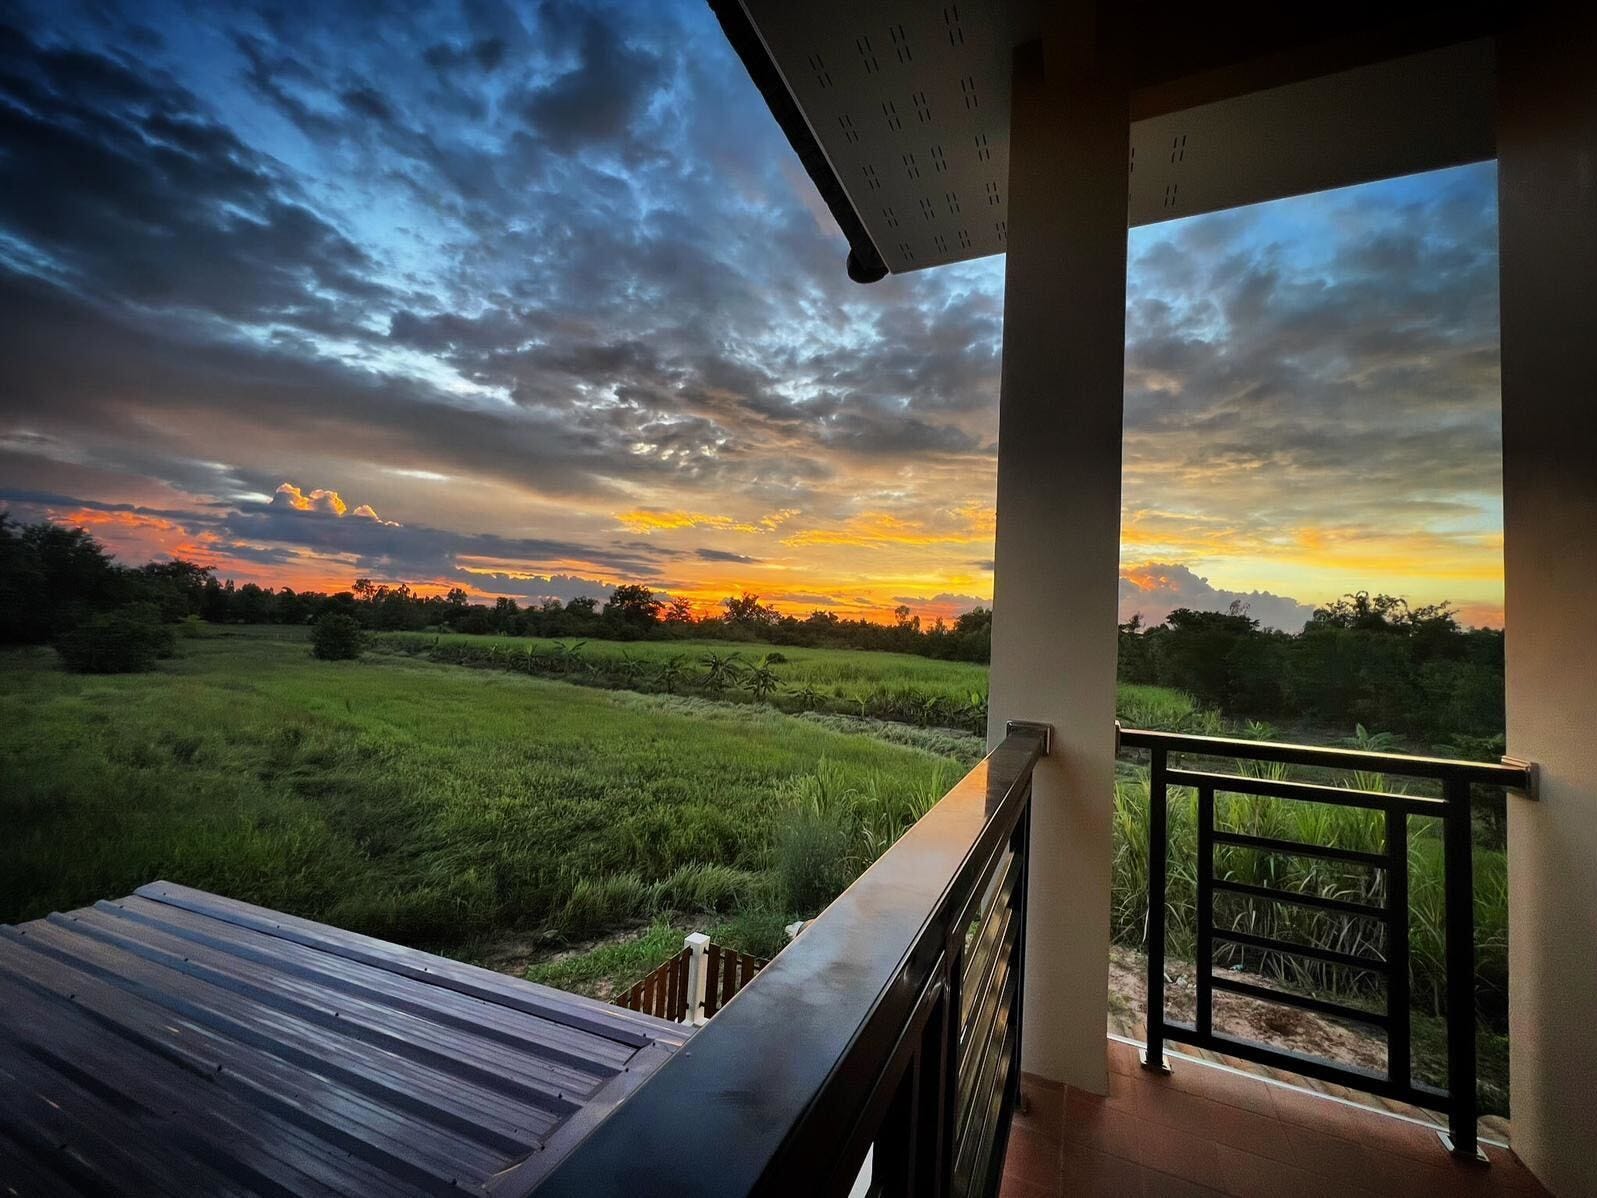 Ein Sonnenuntergang vom Balkon eines Hauses aus gesehen.